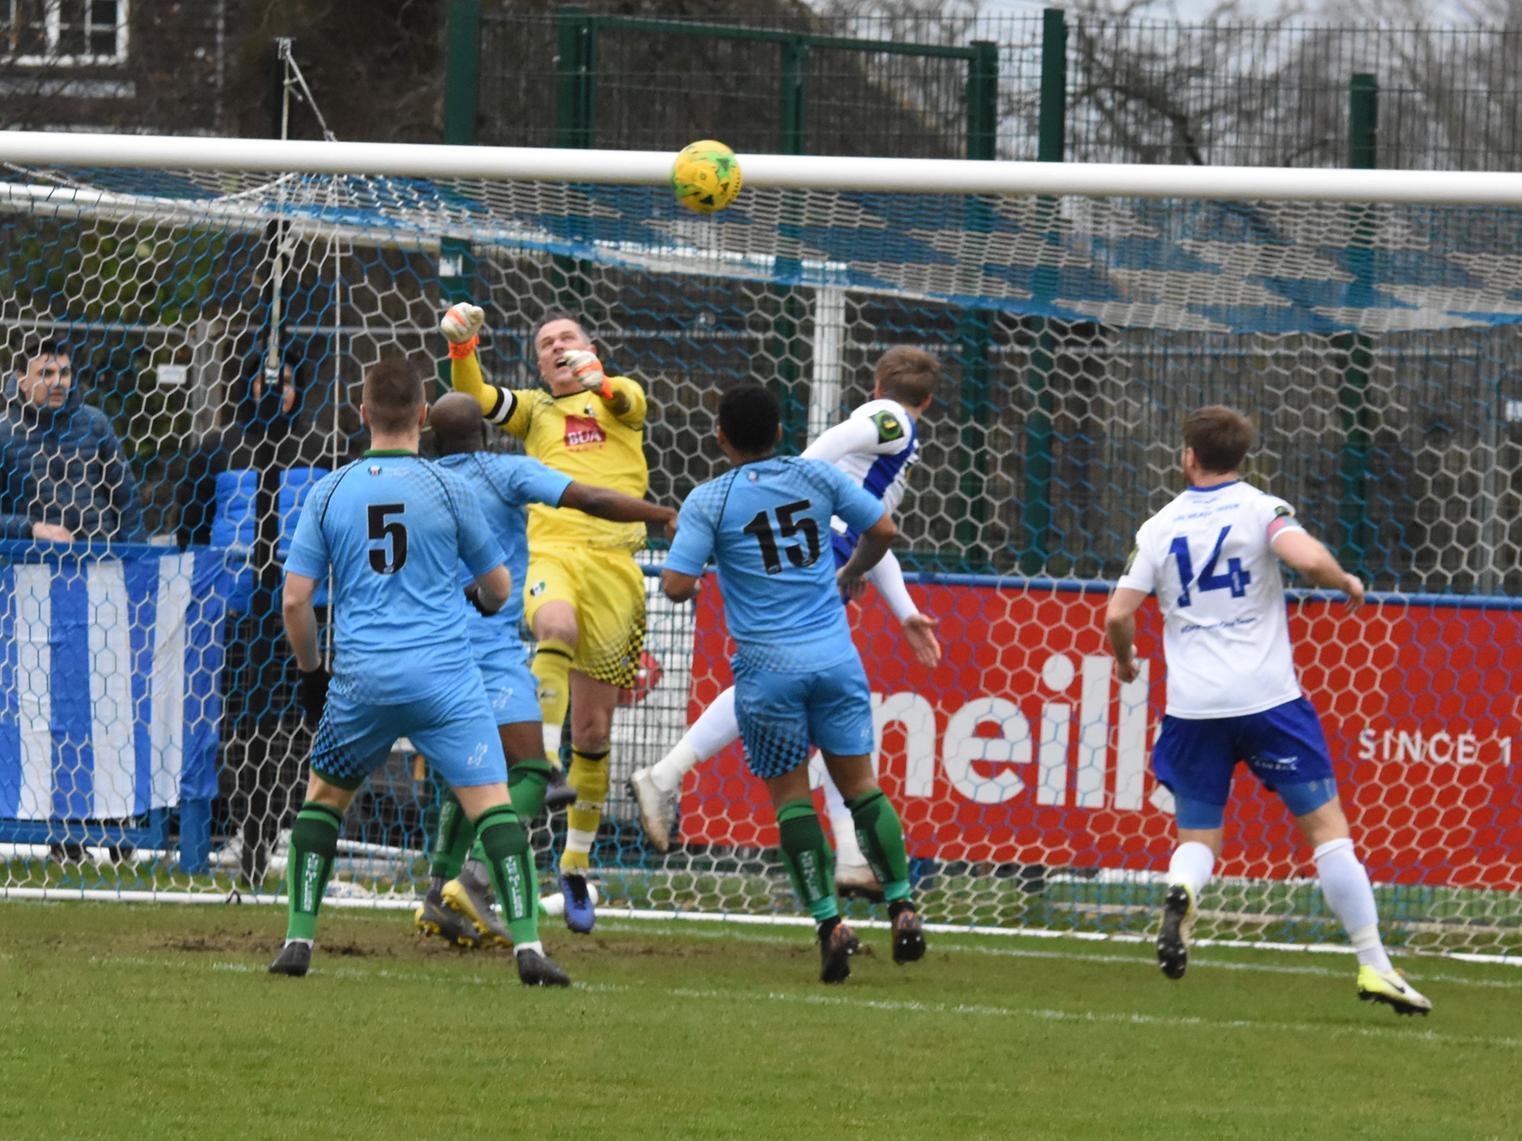 Callum Saunders heads the ball towards the goal.